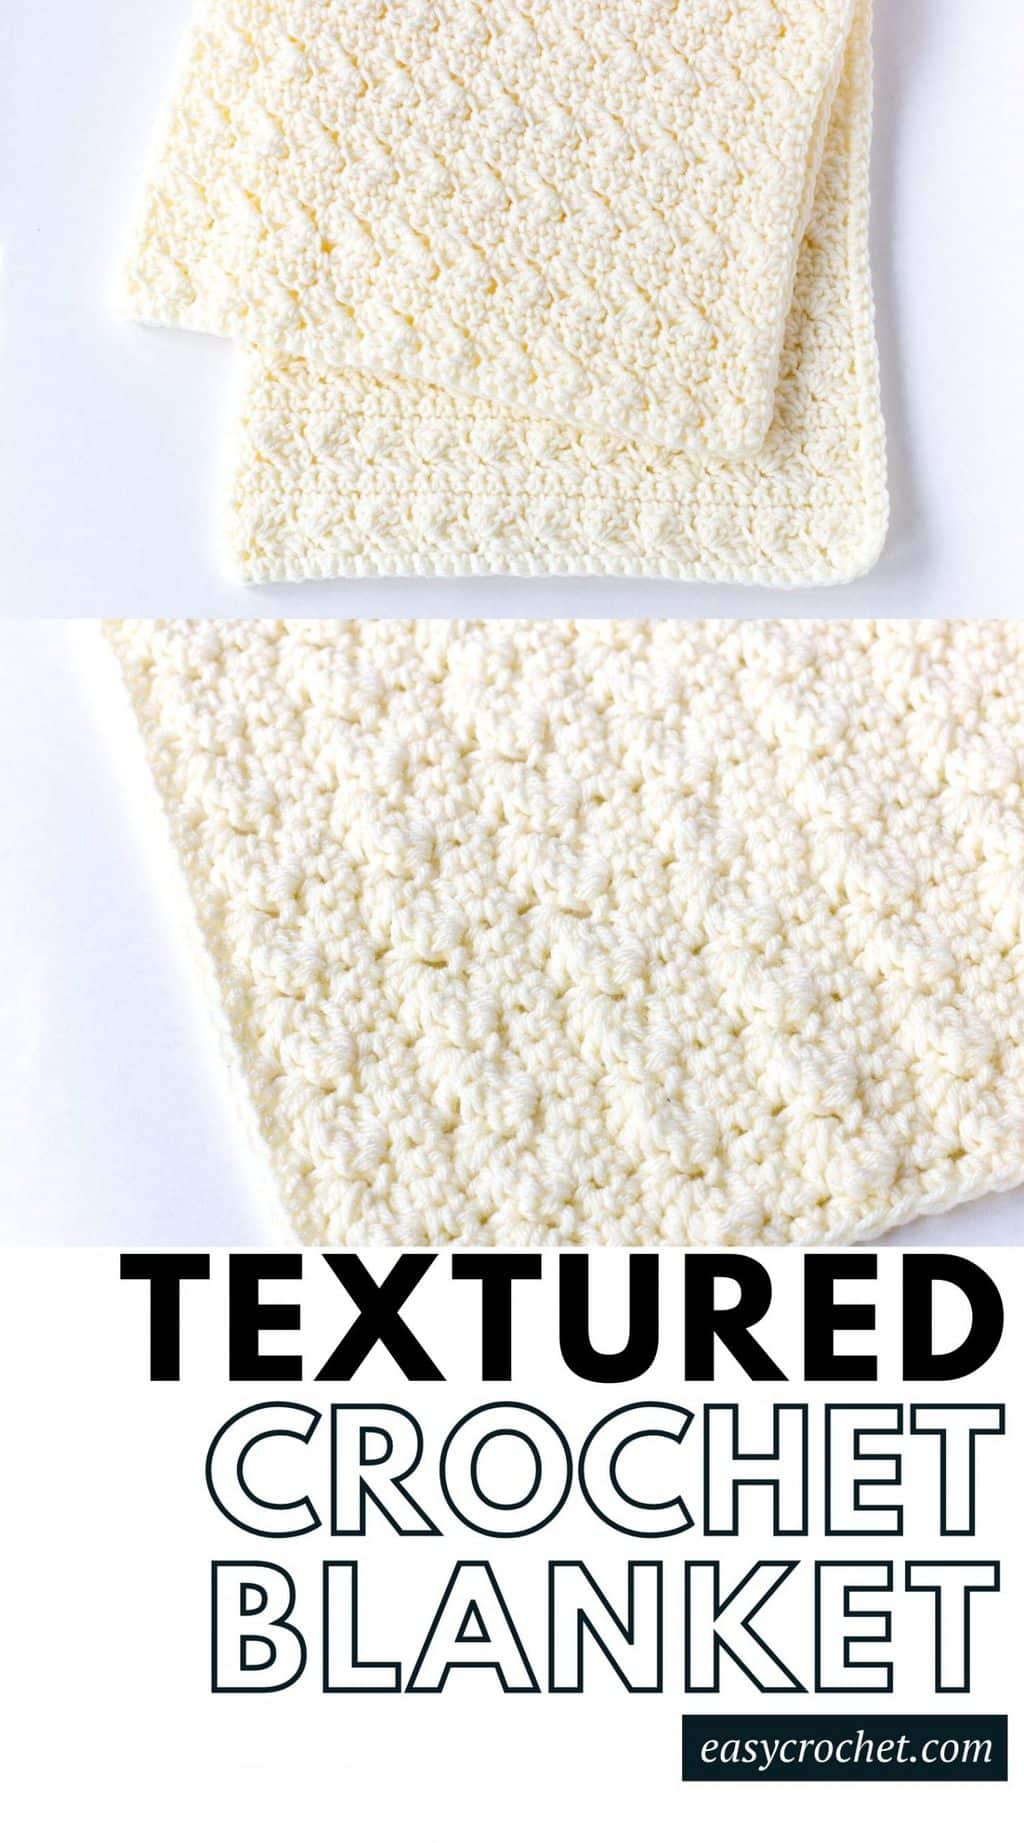 Modern Crochet Blanket Pattern with Beautiful Texture free crochet pattern